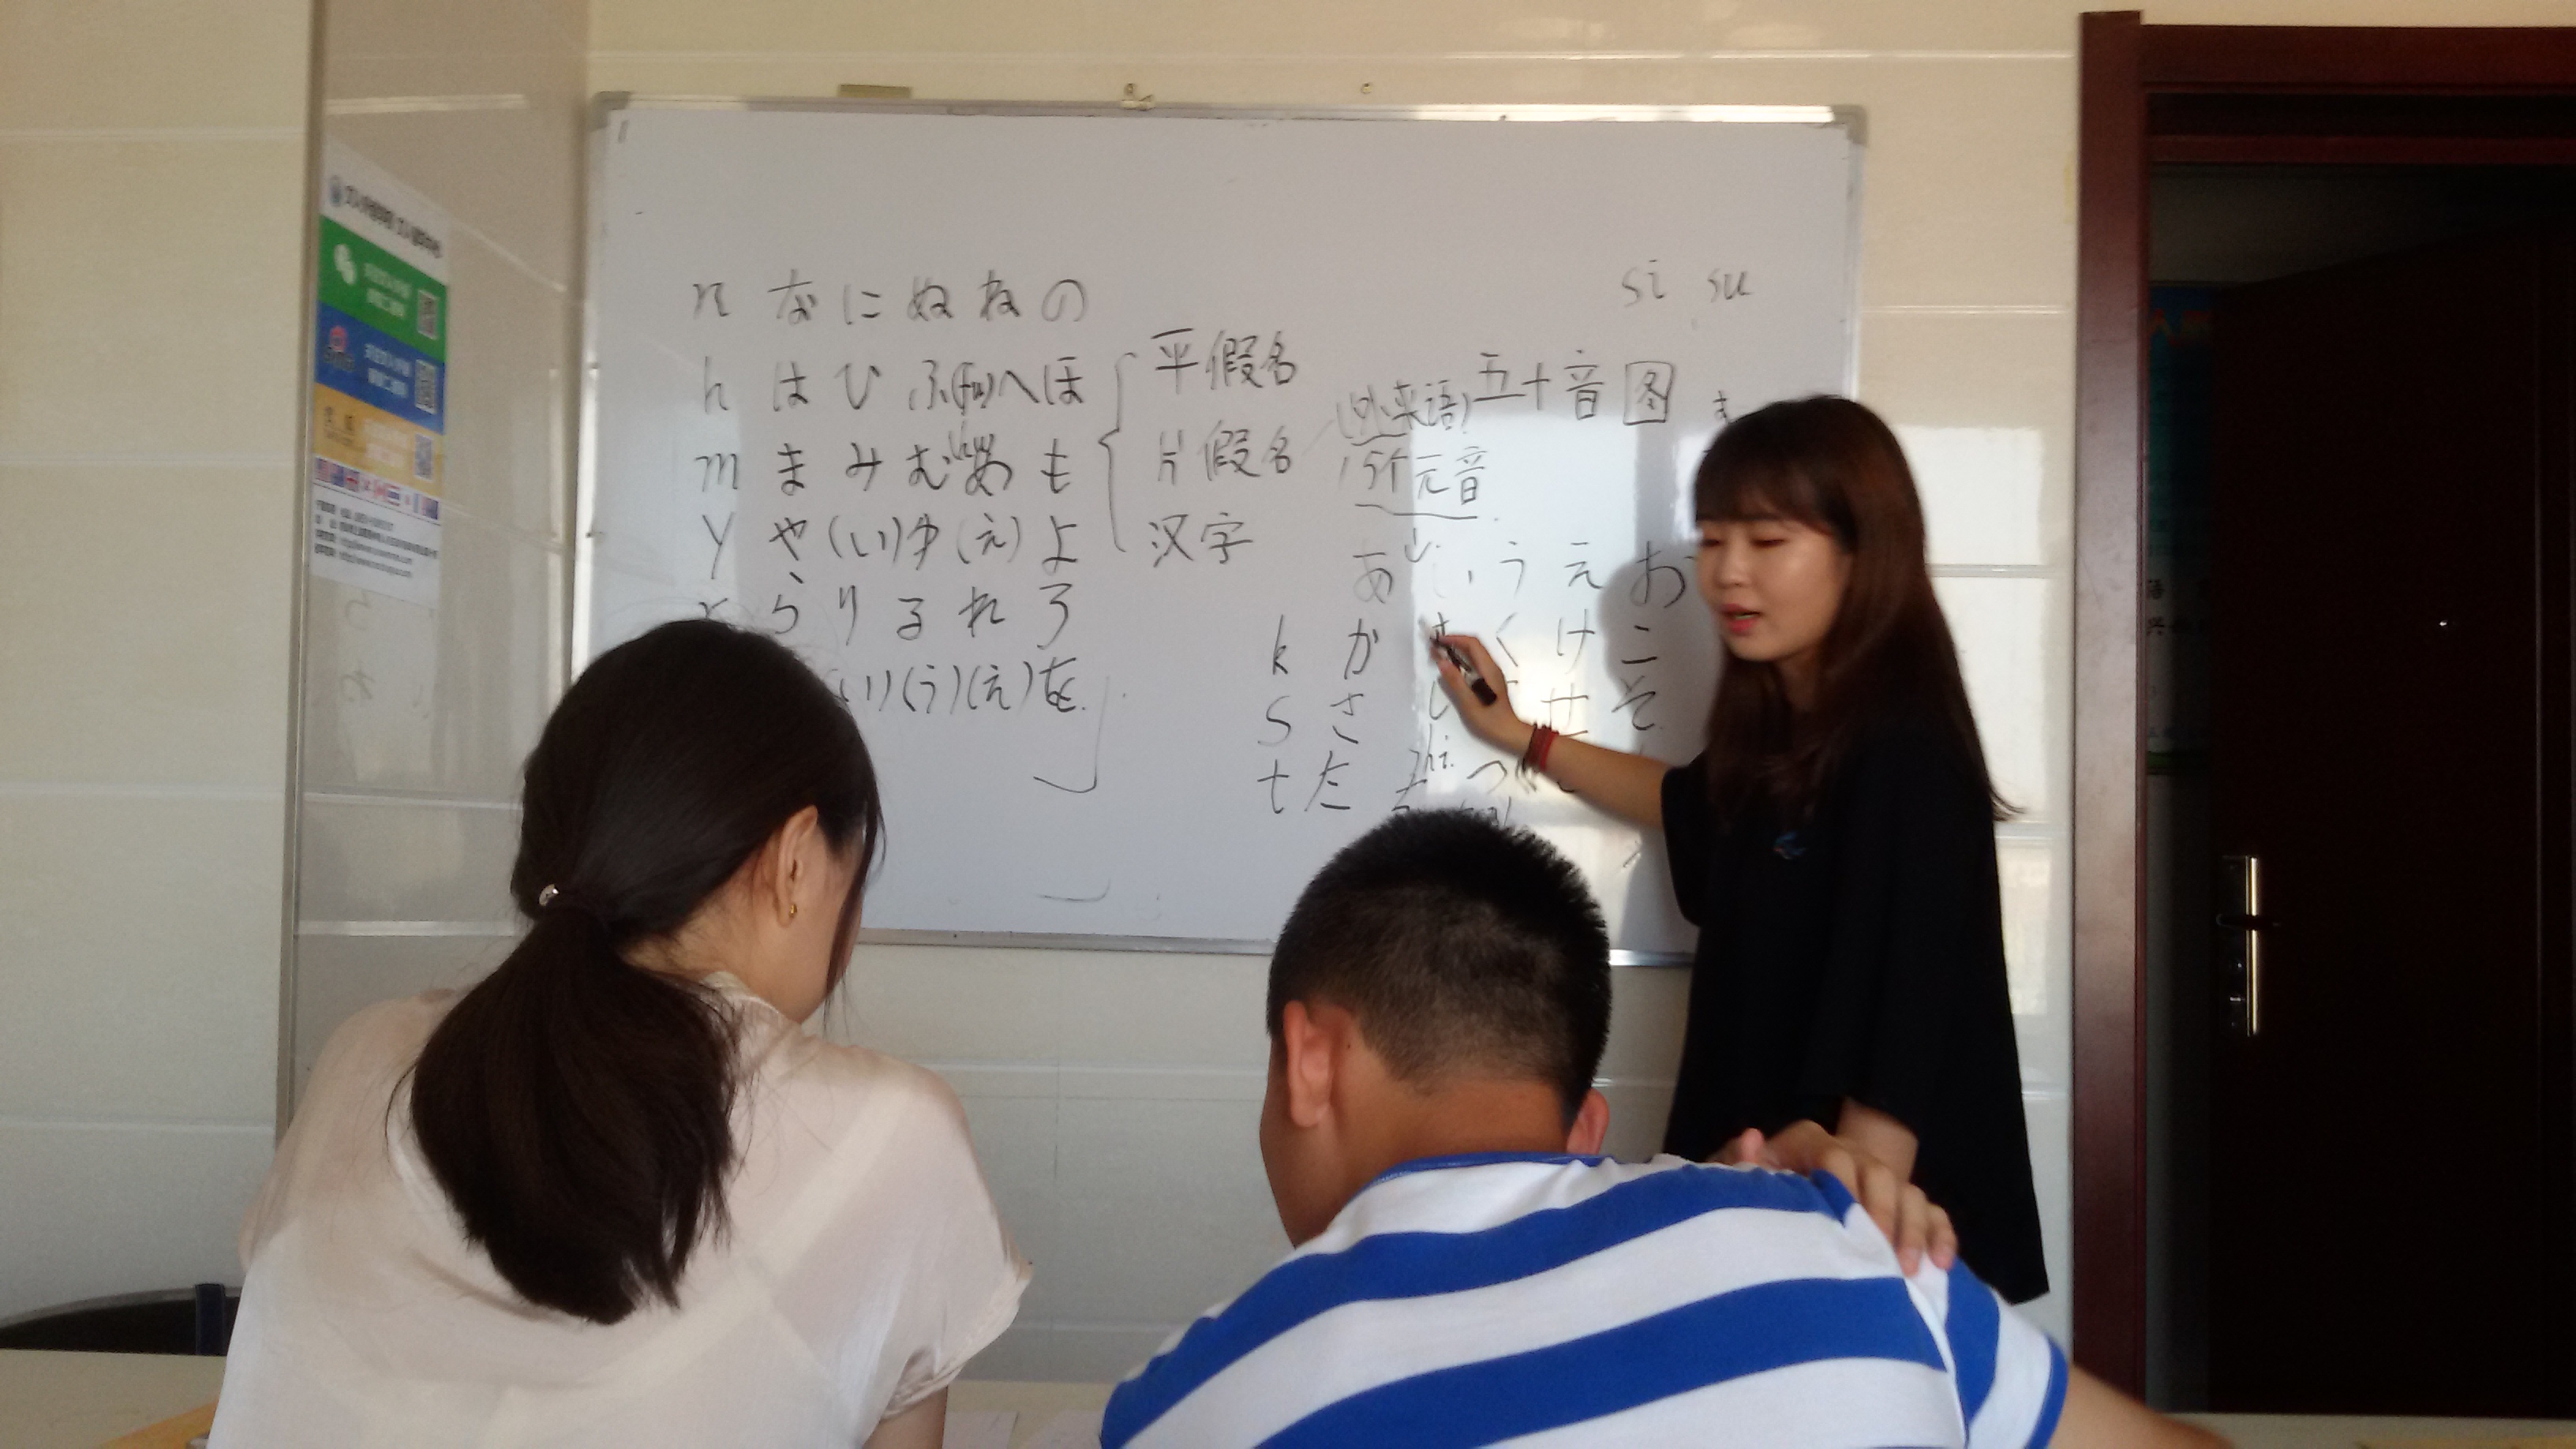 日语需要考级,日本村外教网怎么样?